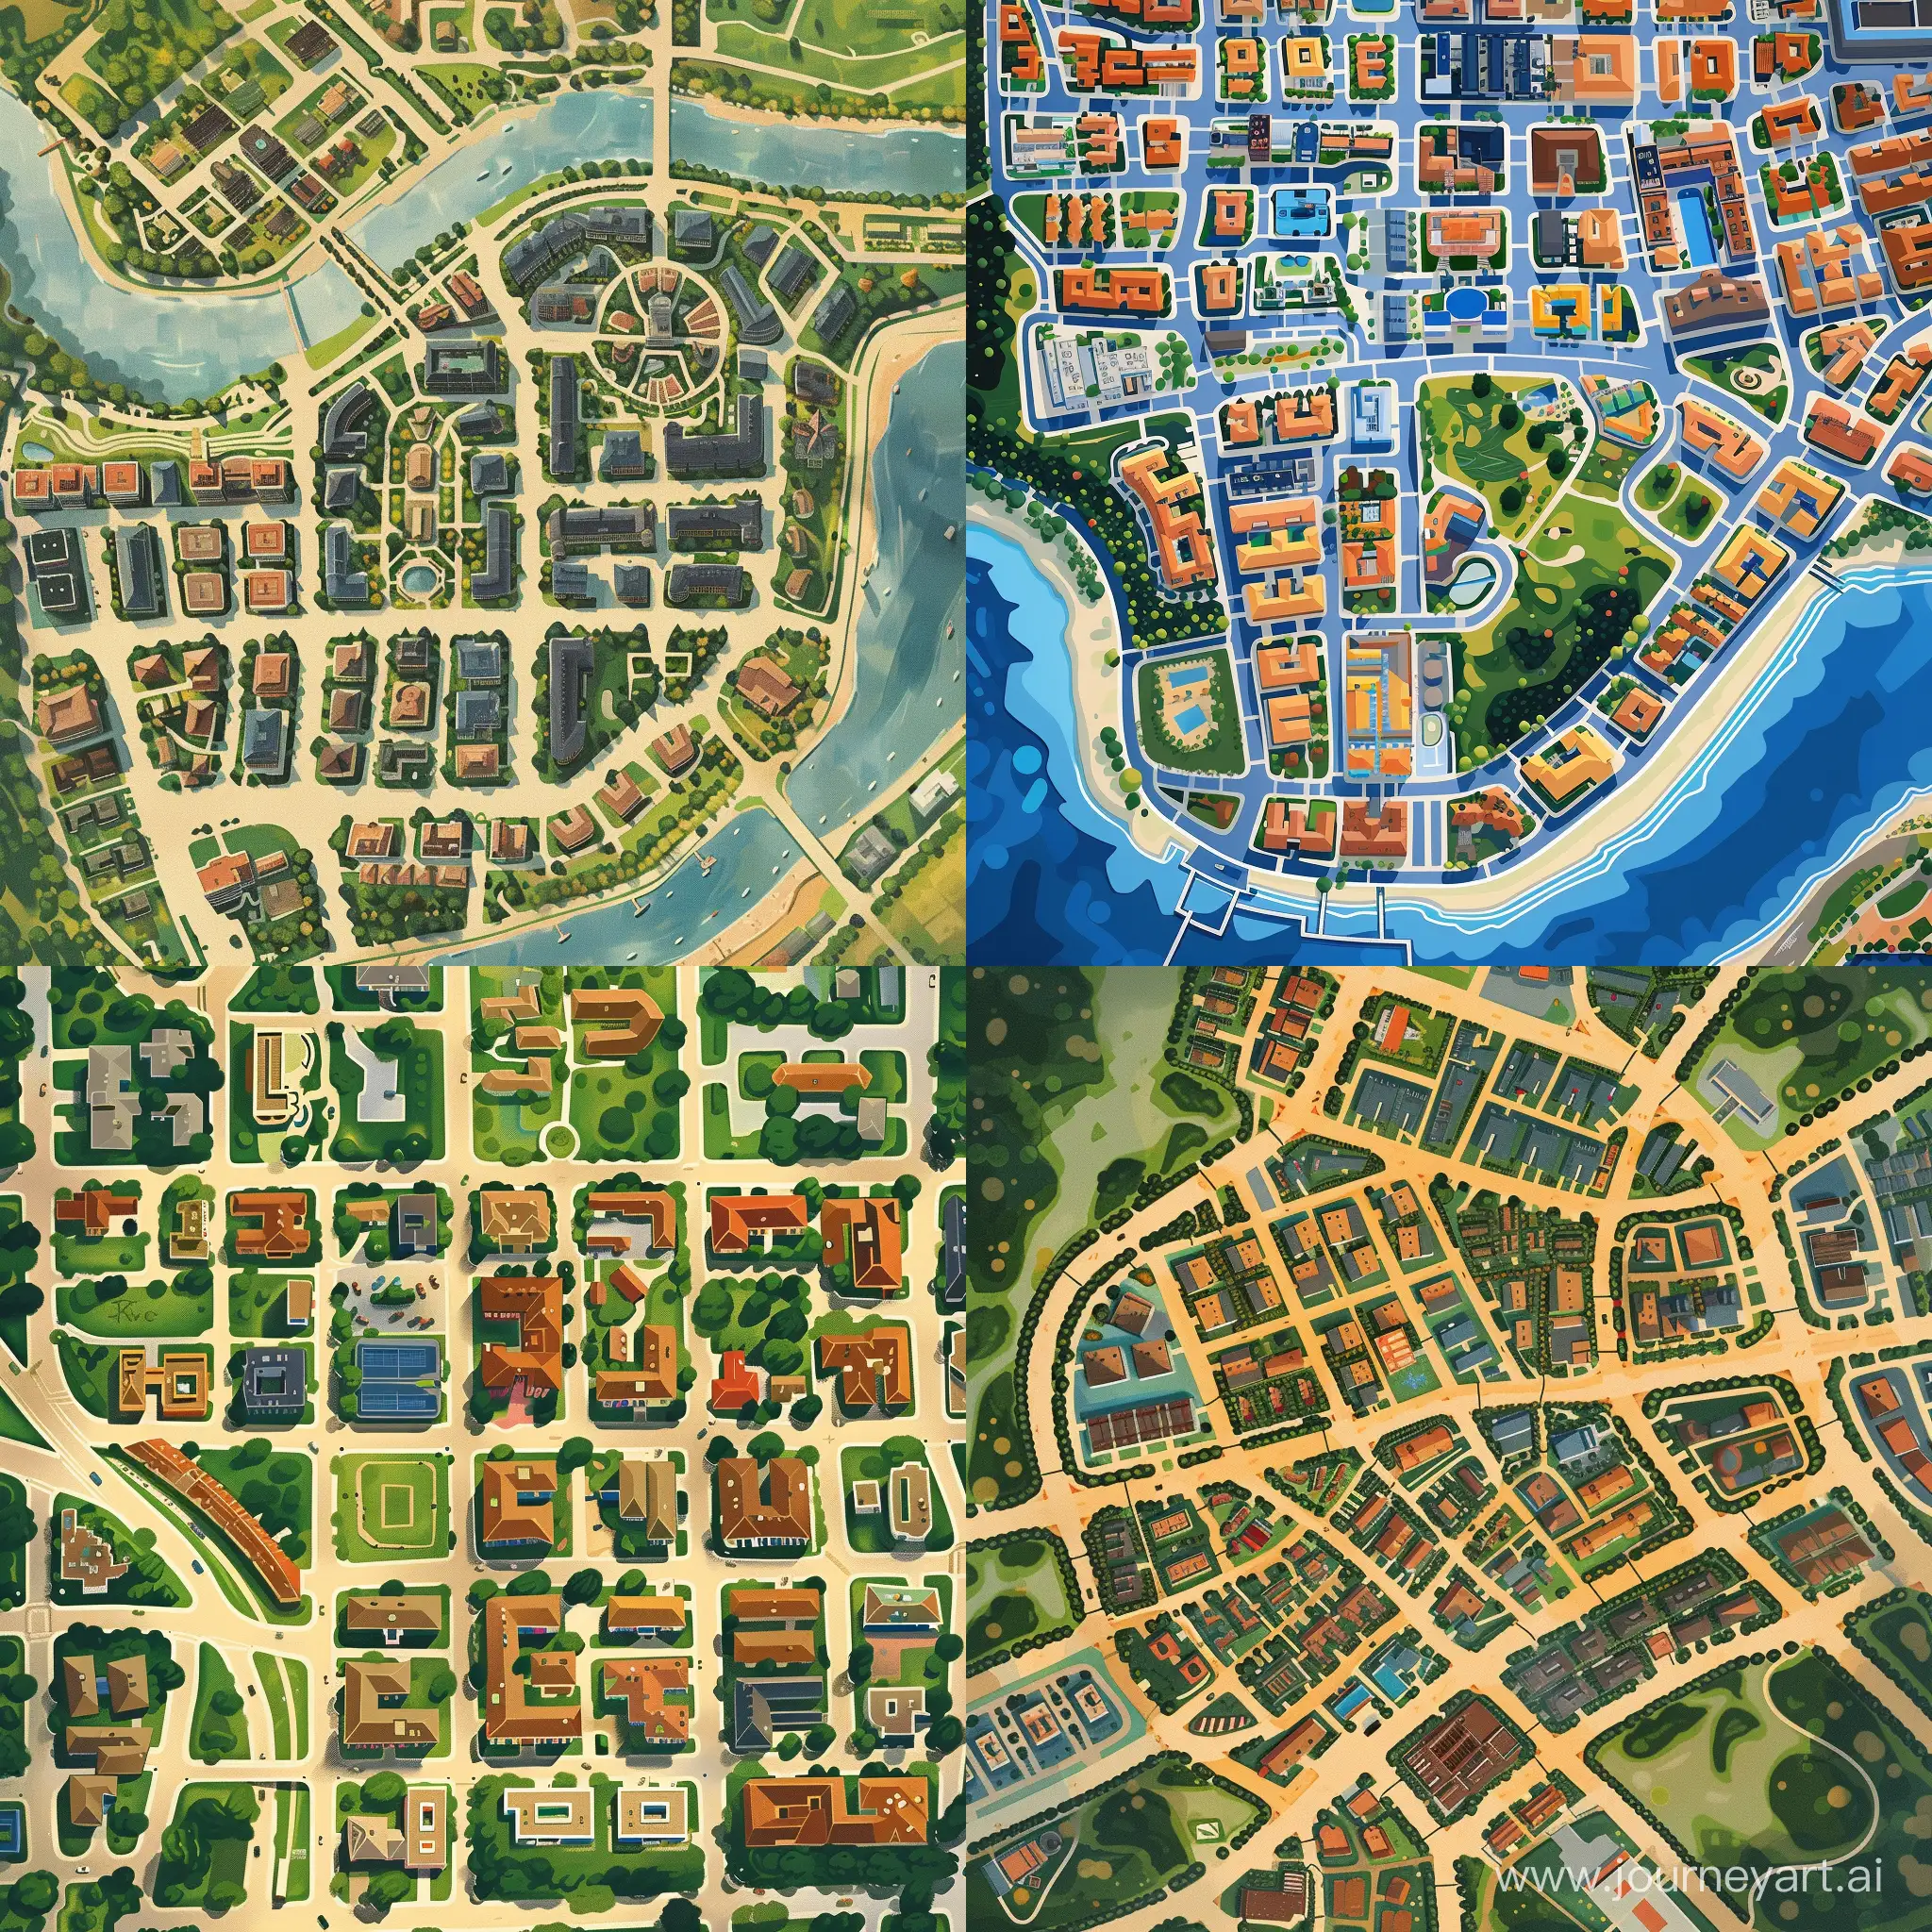 нарисованная картинка карта города вид сверху из 5 районов стиль мульт реализм как в гта 5